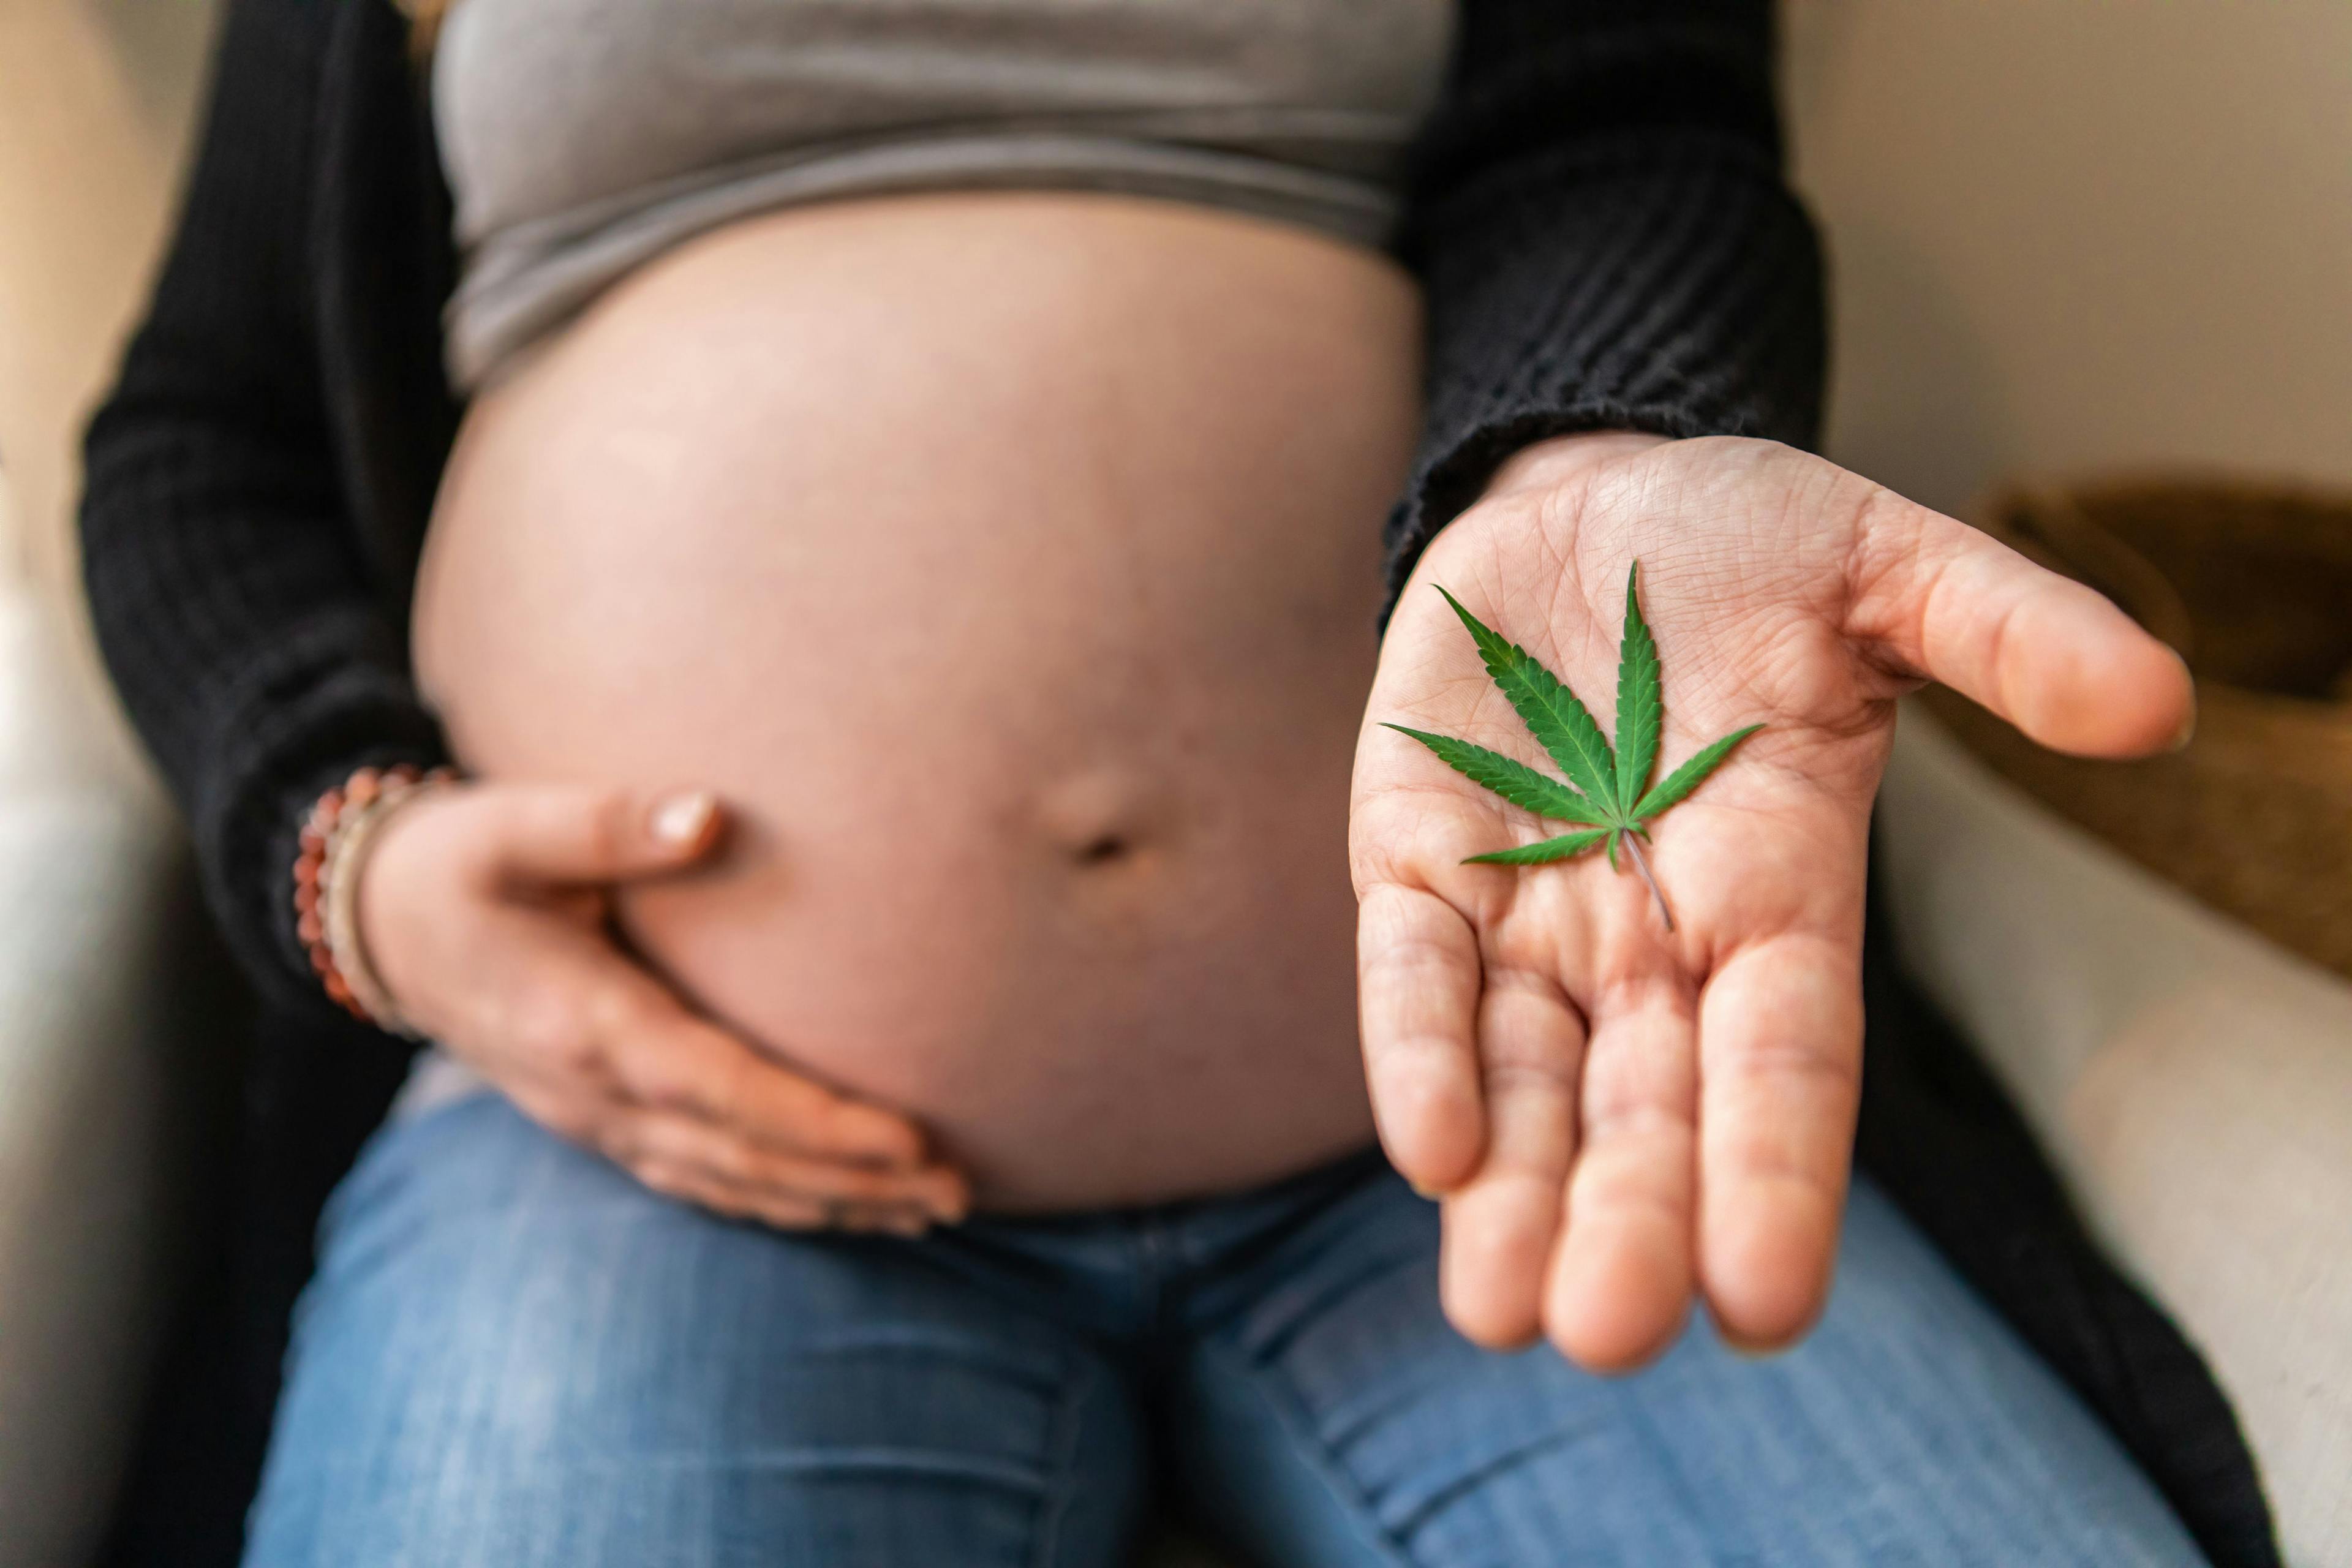 Prenatal cannabis exposure increases risk of mental disorders